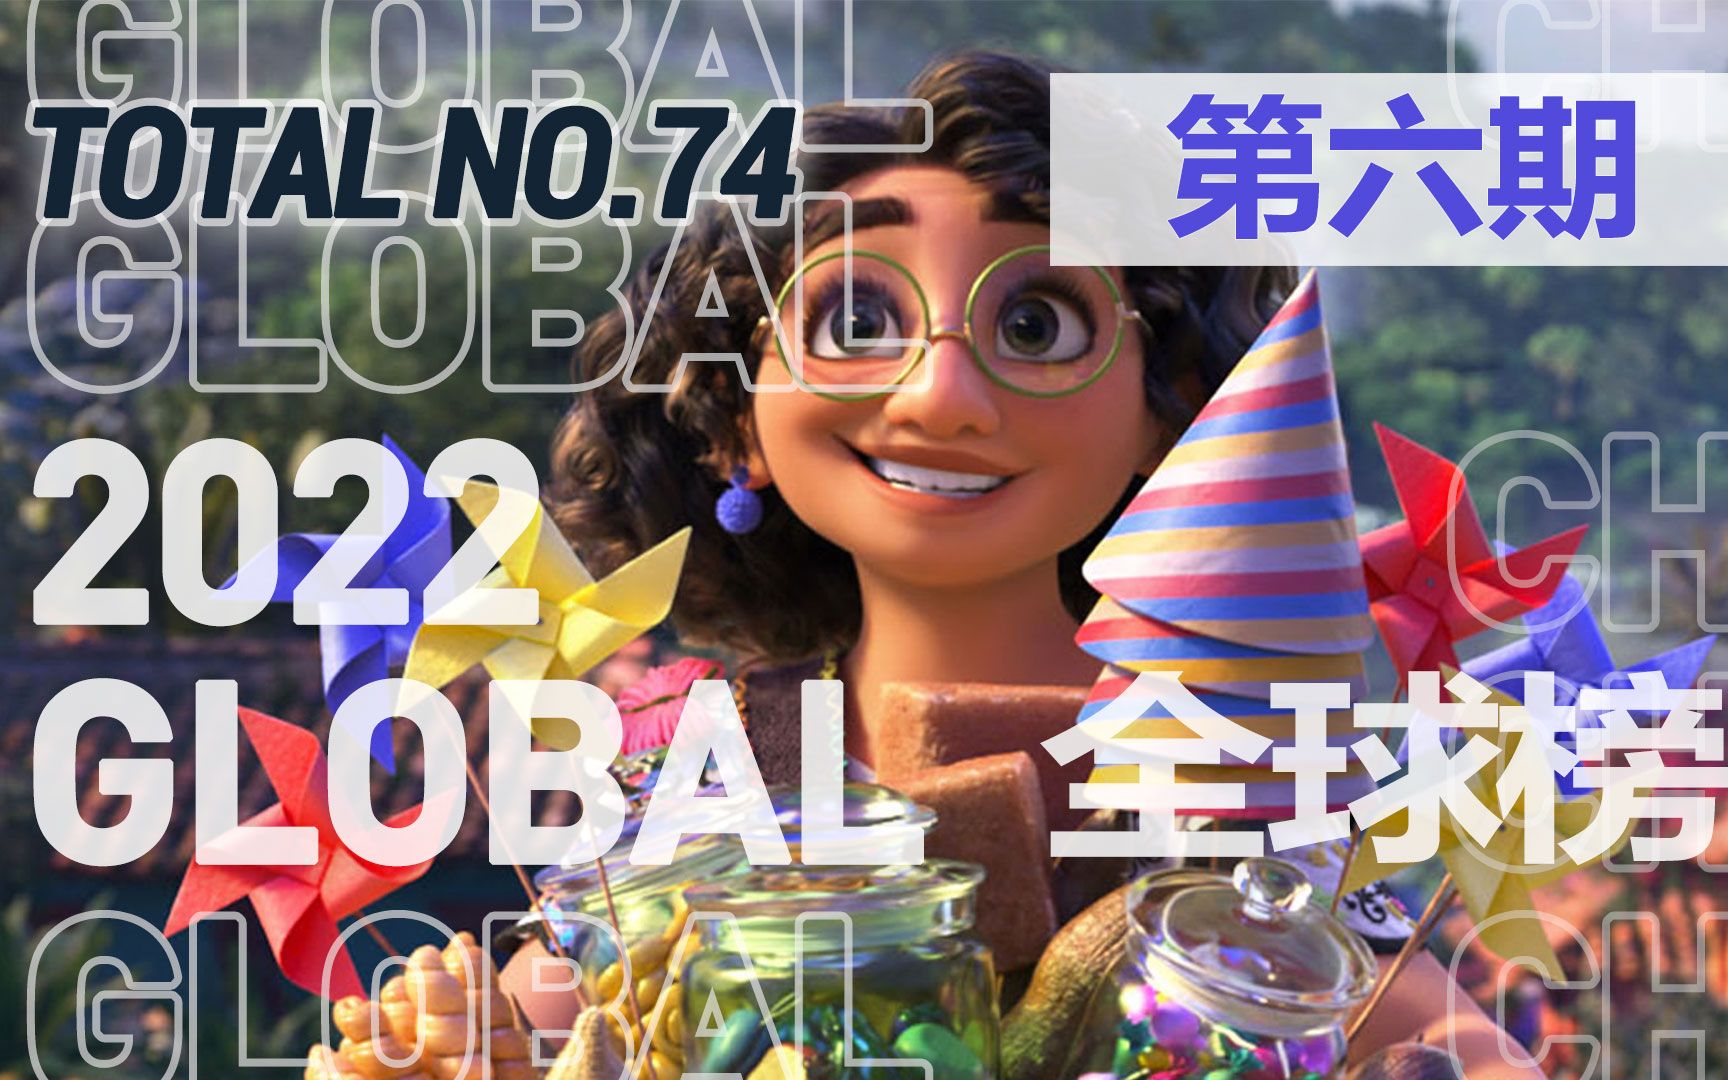 公告牌全球单曲榜 2022年第六期 迪士尼动画歌曲真的很牛！玻璃动物创新高！要开学开工了，大家收心没？ BILLBOARD GLOBAL 200「木JJ出品」